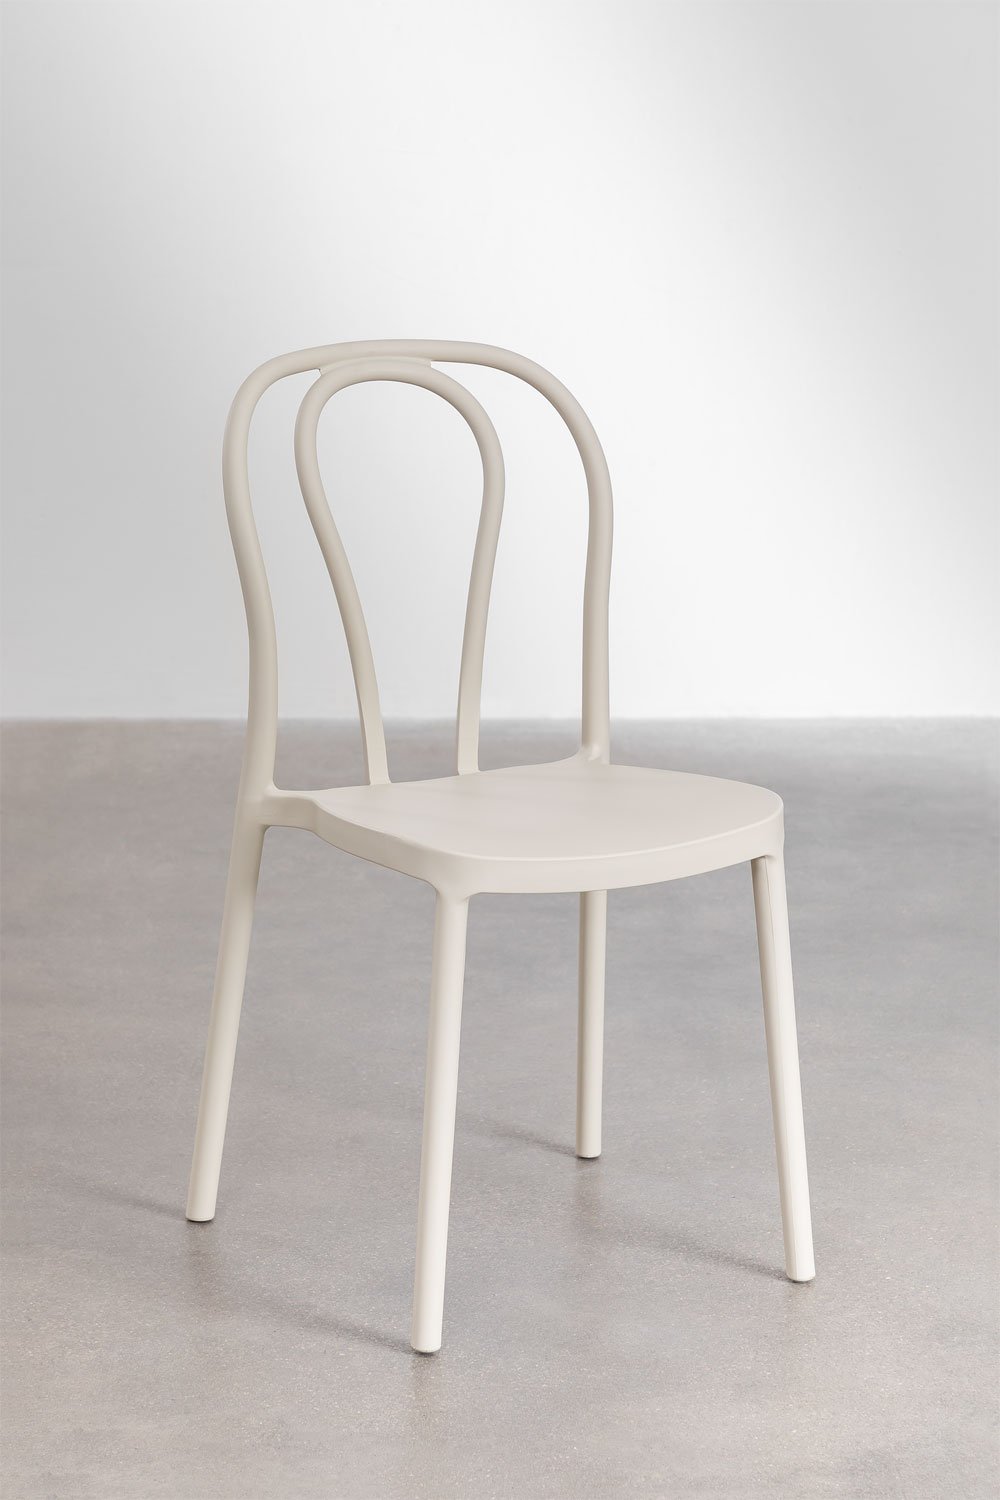 Confezione da 4 sedie da pranzo impilabili Mizzi, immagine della galleria 1